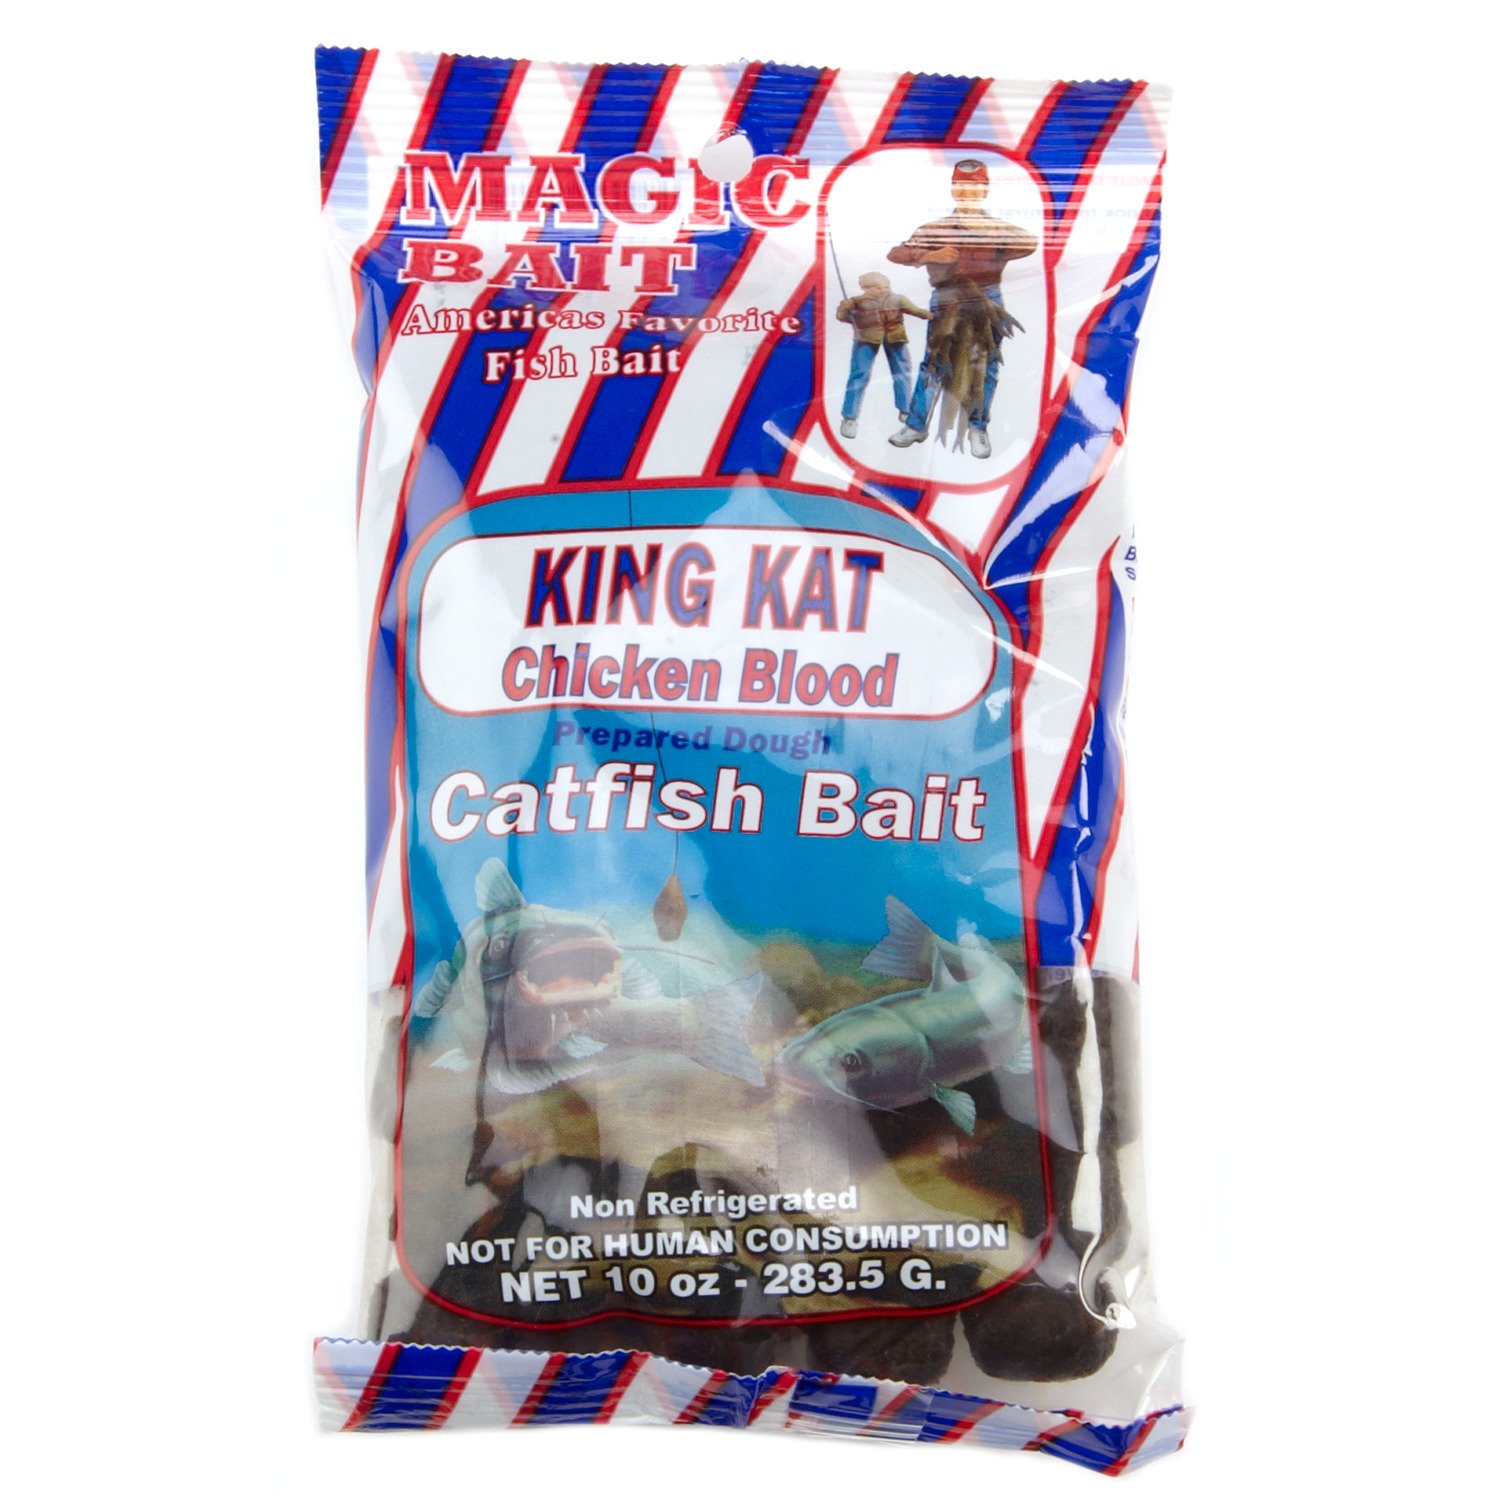 Magic Bait King Kat Chicken Blood Catfish Bait